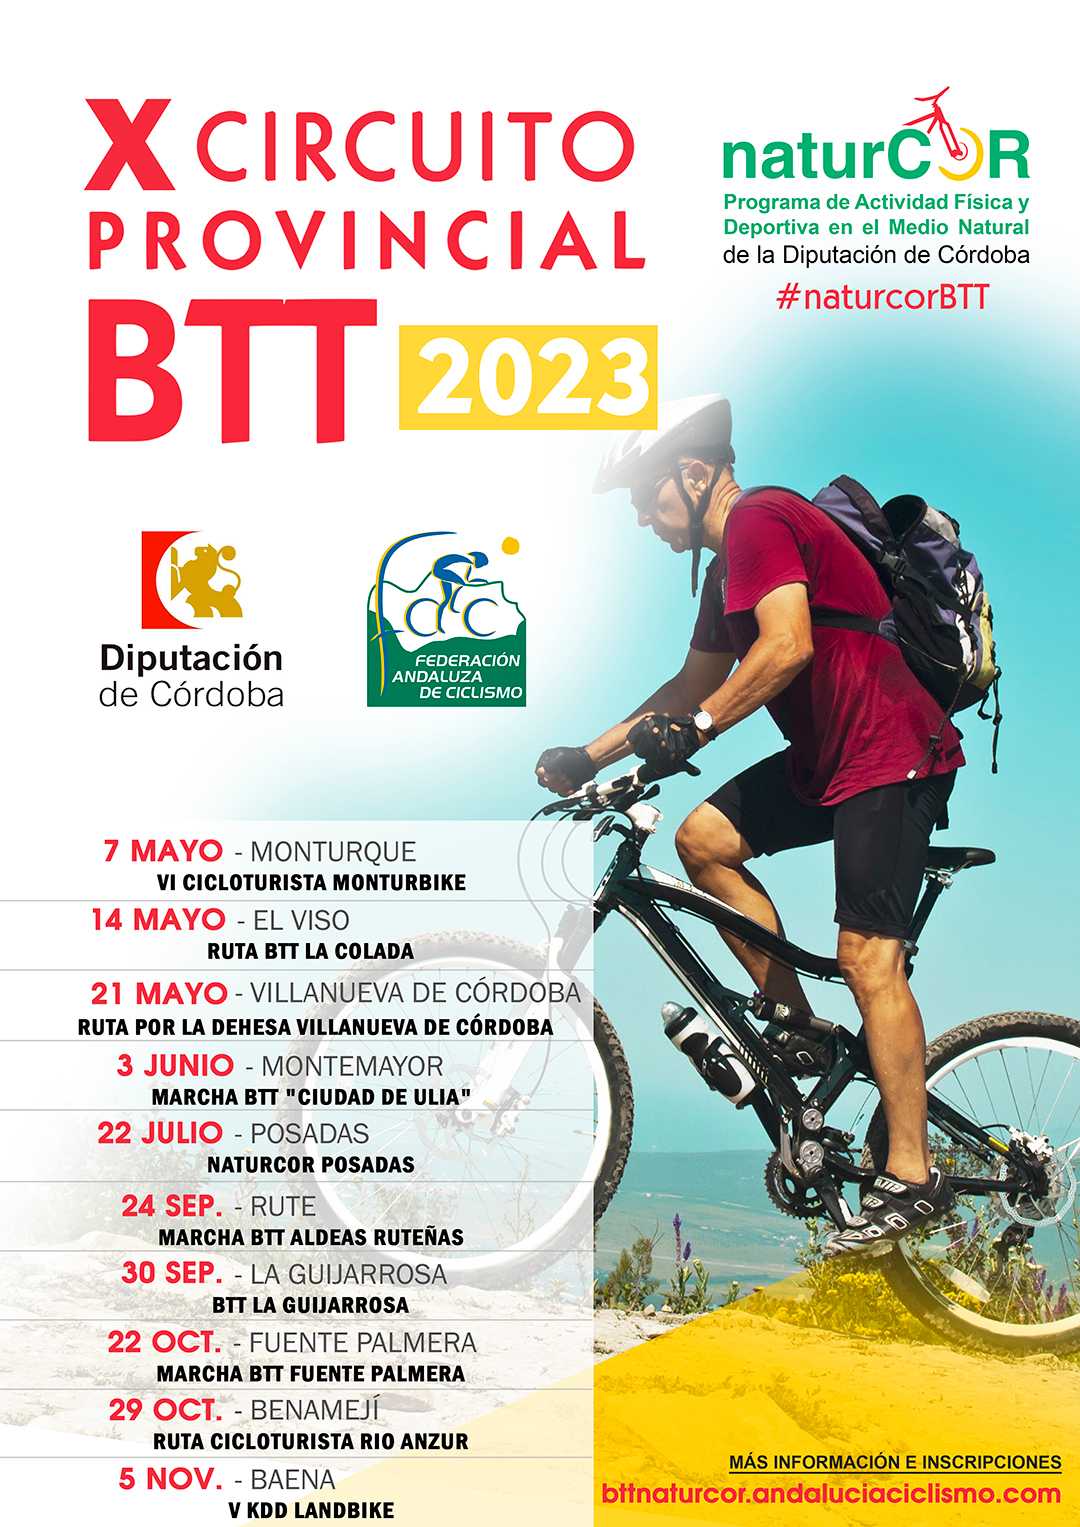 El Viso dará continuidad al X Circuito Provincial de BTT NaturCor 2023